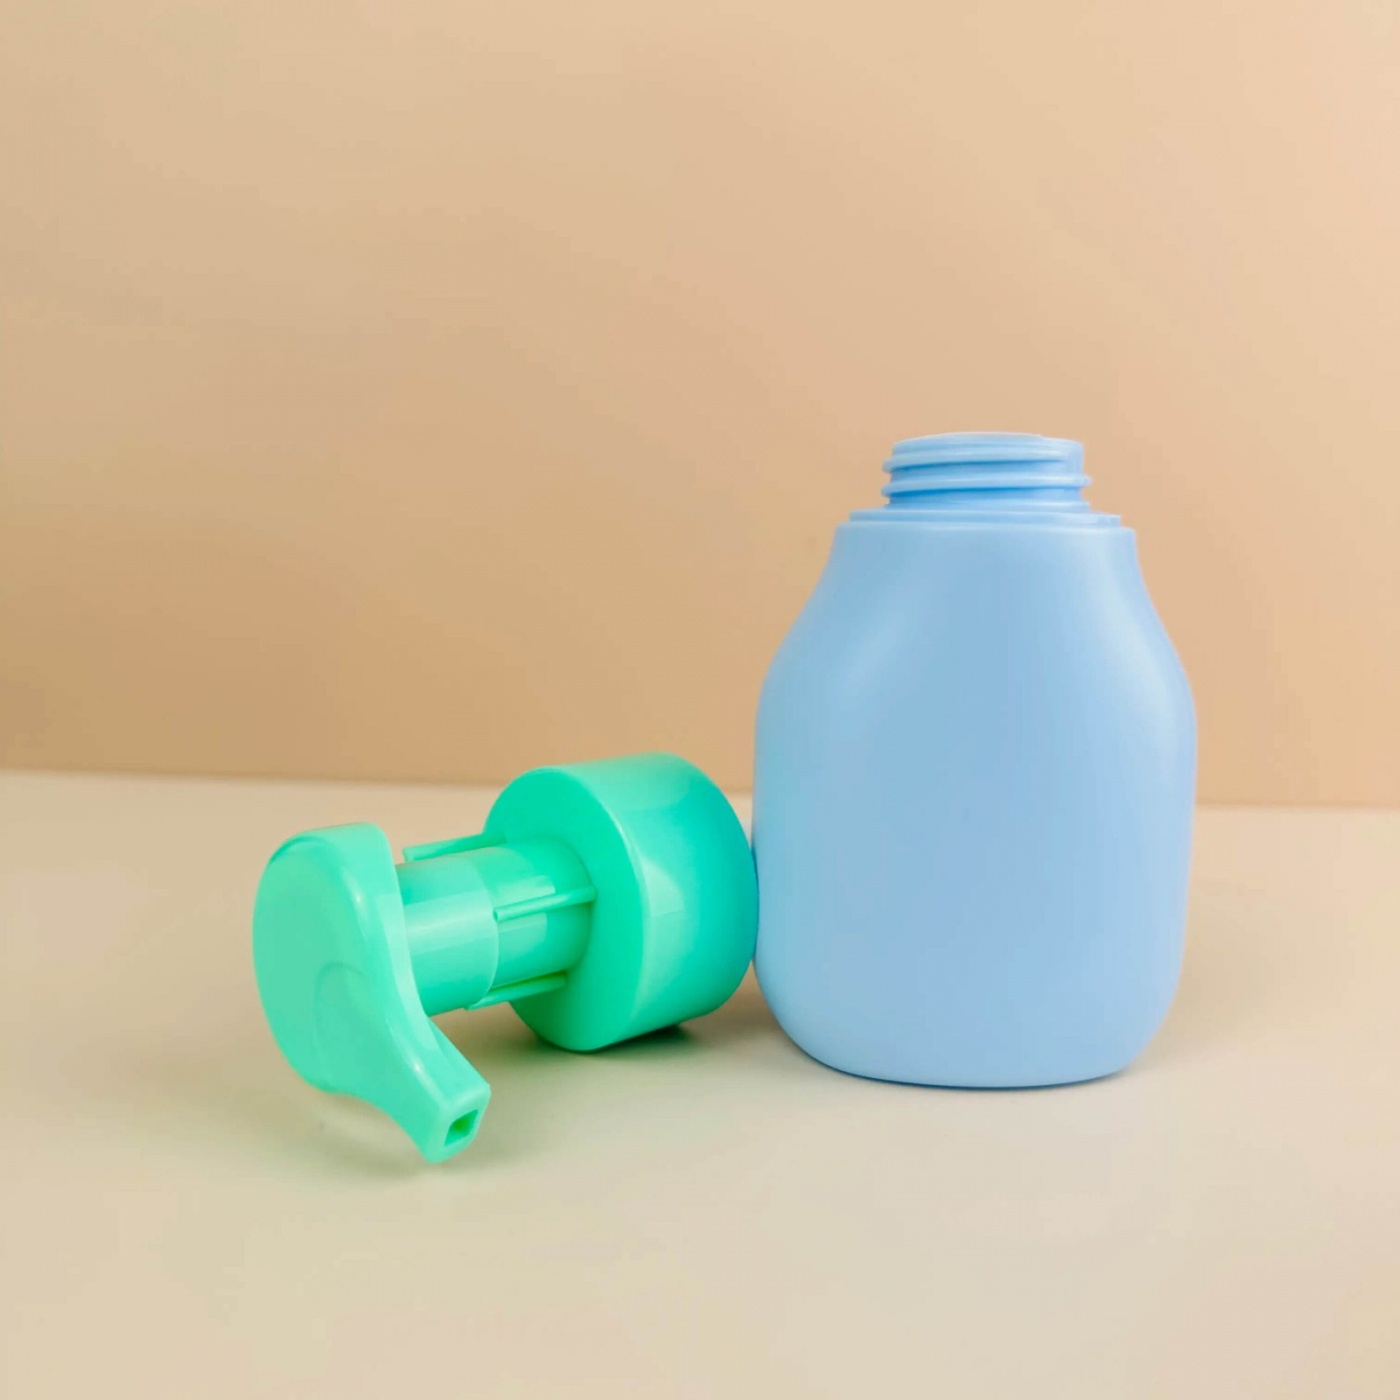 Unique Shape Plastic Foam Soap Dispenser Bottle With Pump